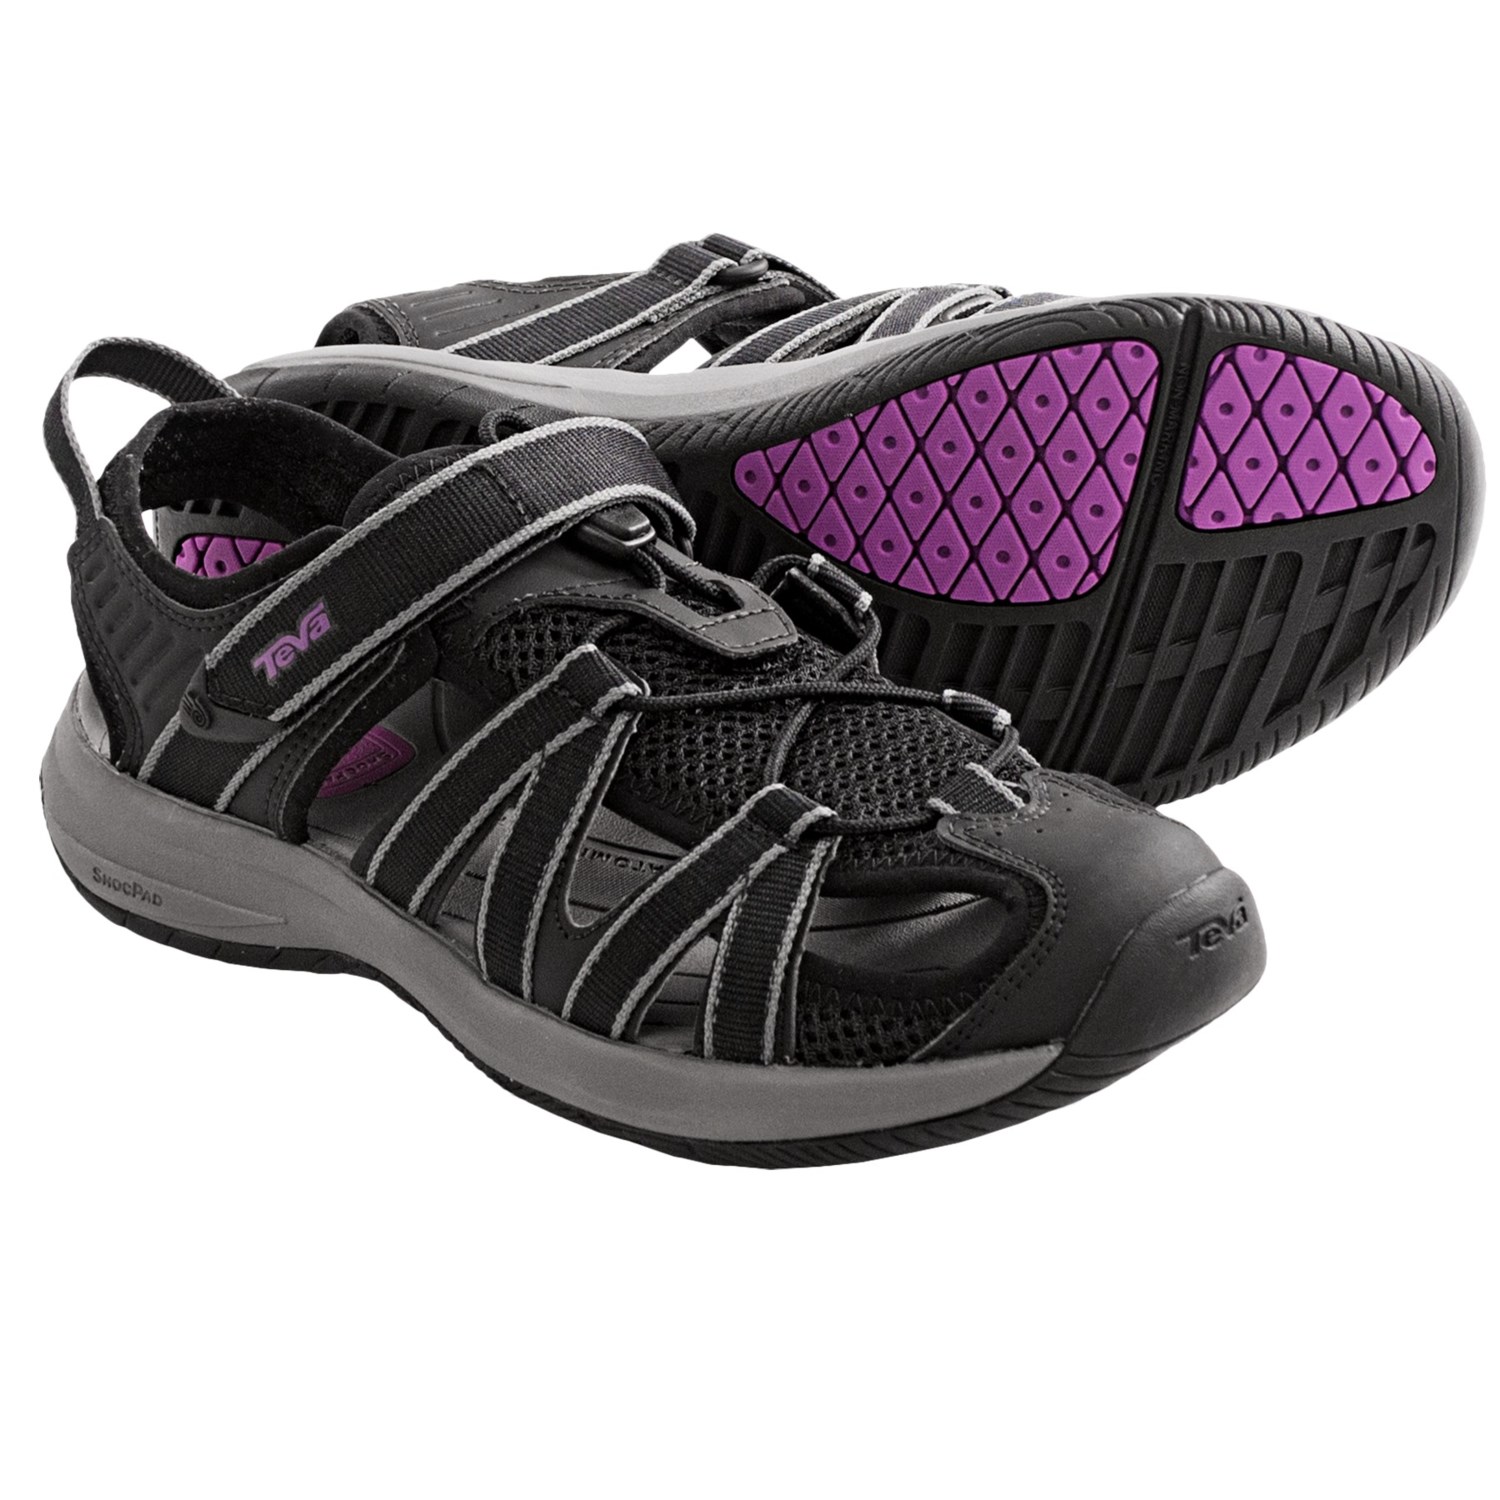 Teva Rosa Sport Sandals (For Women) in BlackPurple